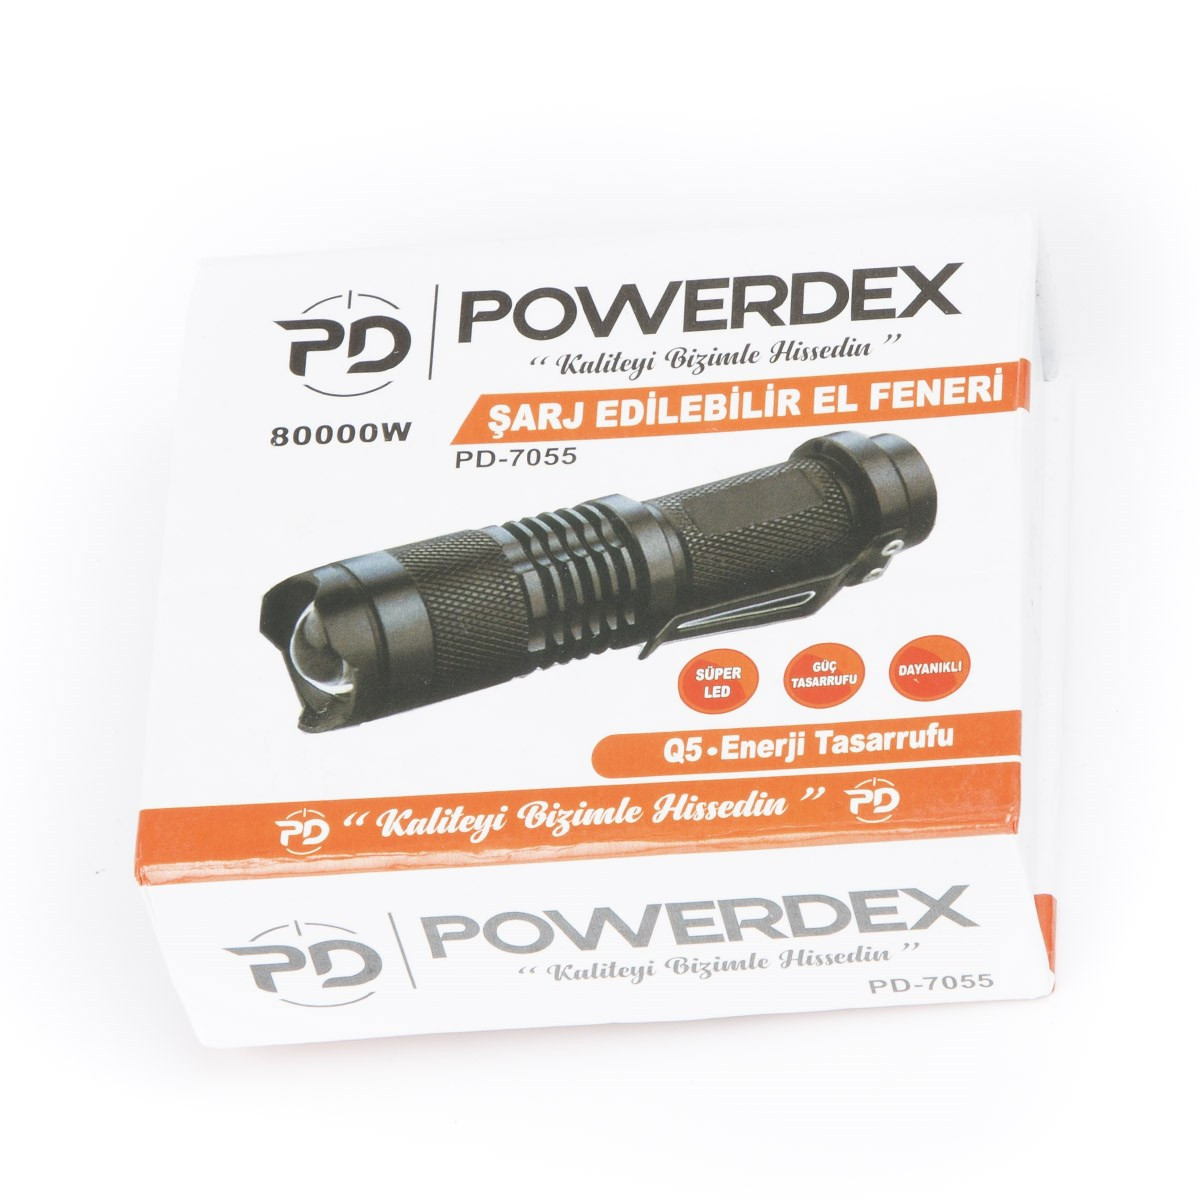 Powerdex%20PD-7055%20Şarj%20Edilebilir%20El%20Feneri